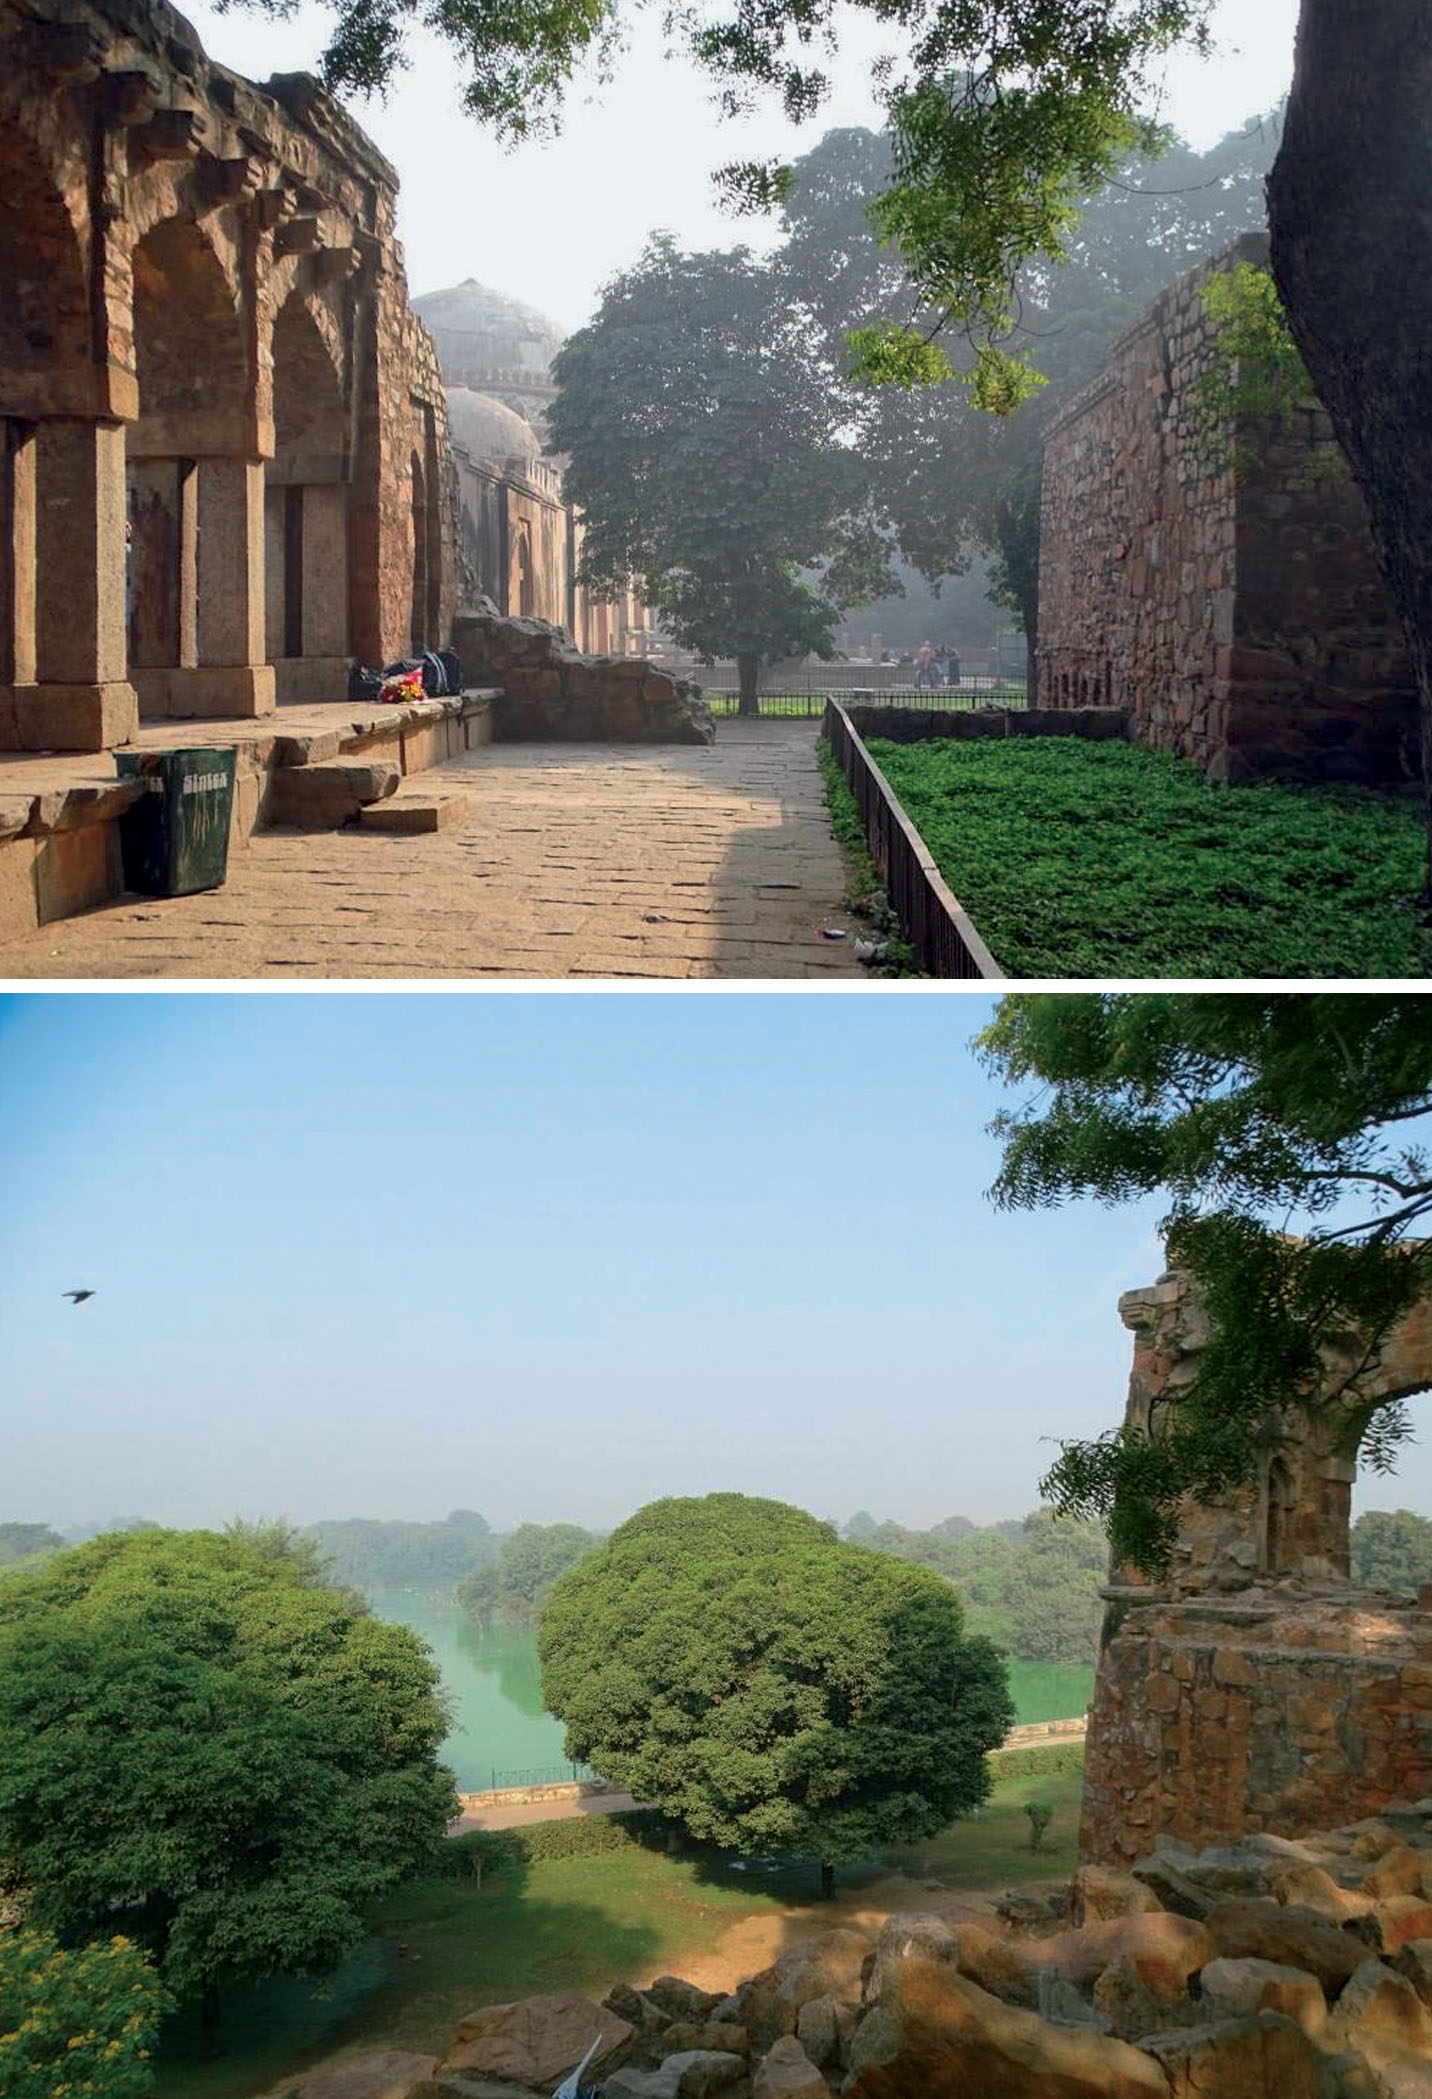 building-landscapes-on-buried-pasts-hauz-khas-complex-delhi-since-late-13th-century-covers-60-acres-today-fraction-original-expanse